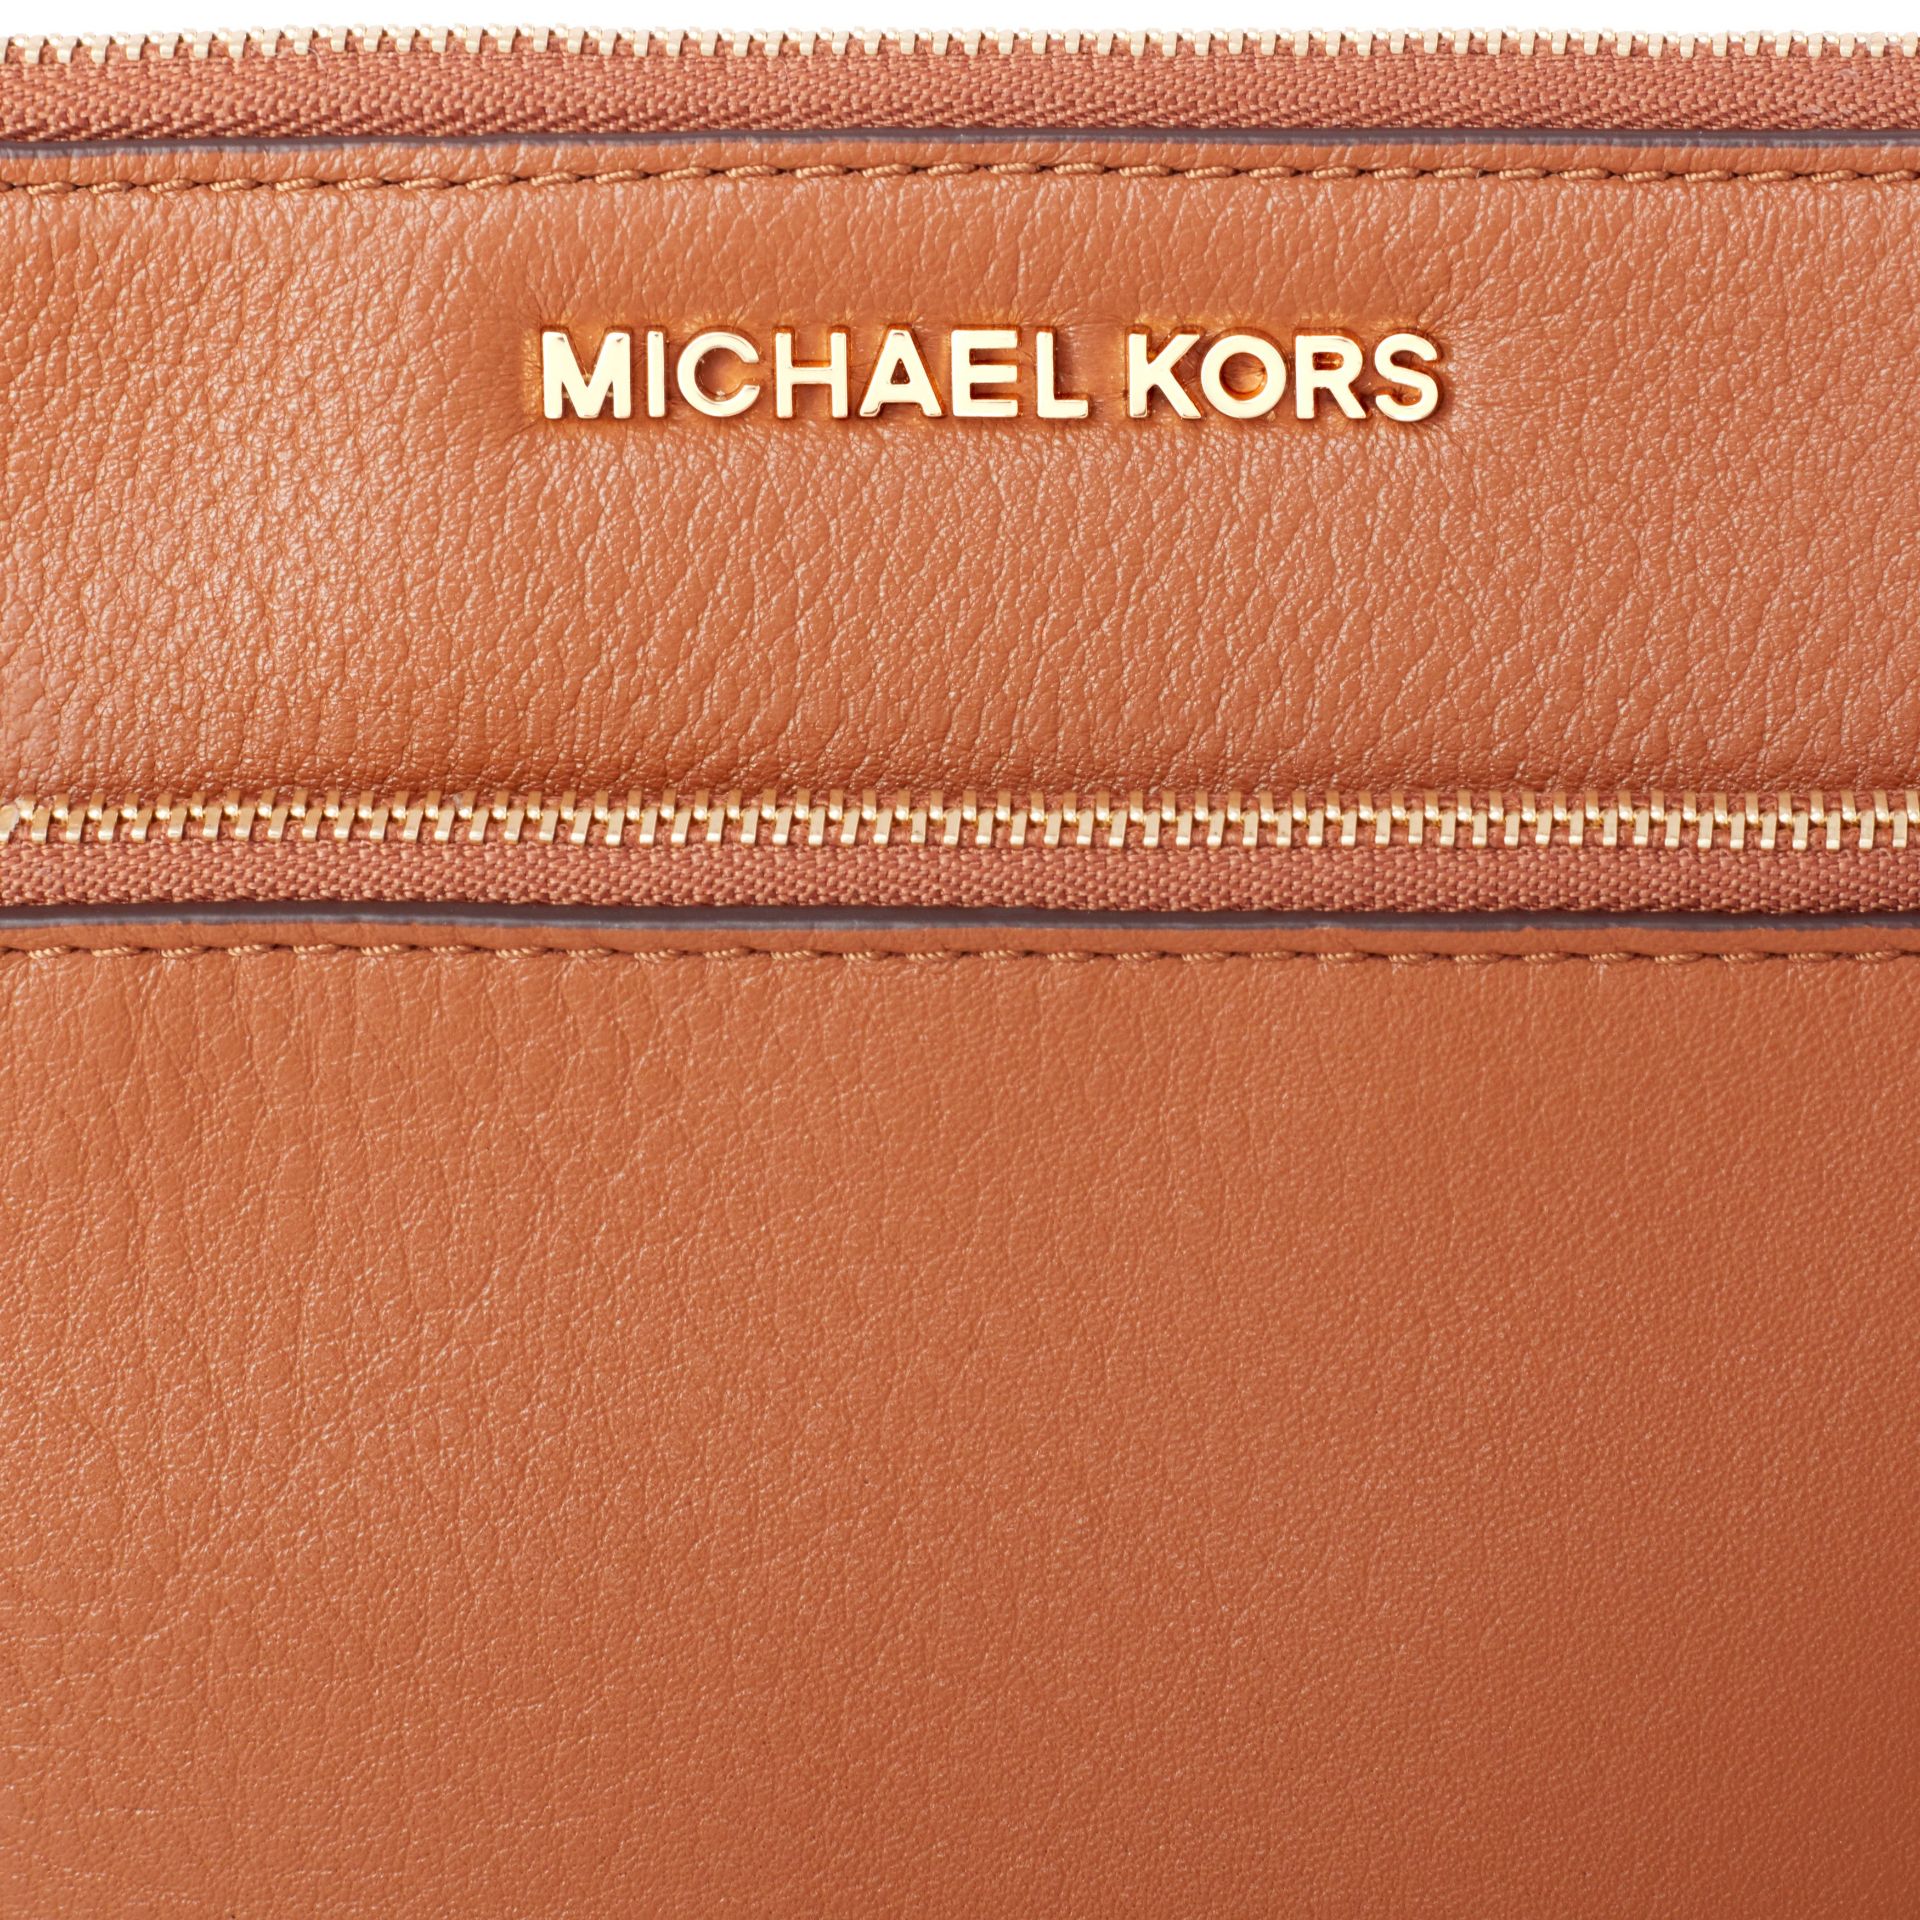 Michael Kors Handbag - Image 5 of 5